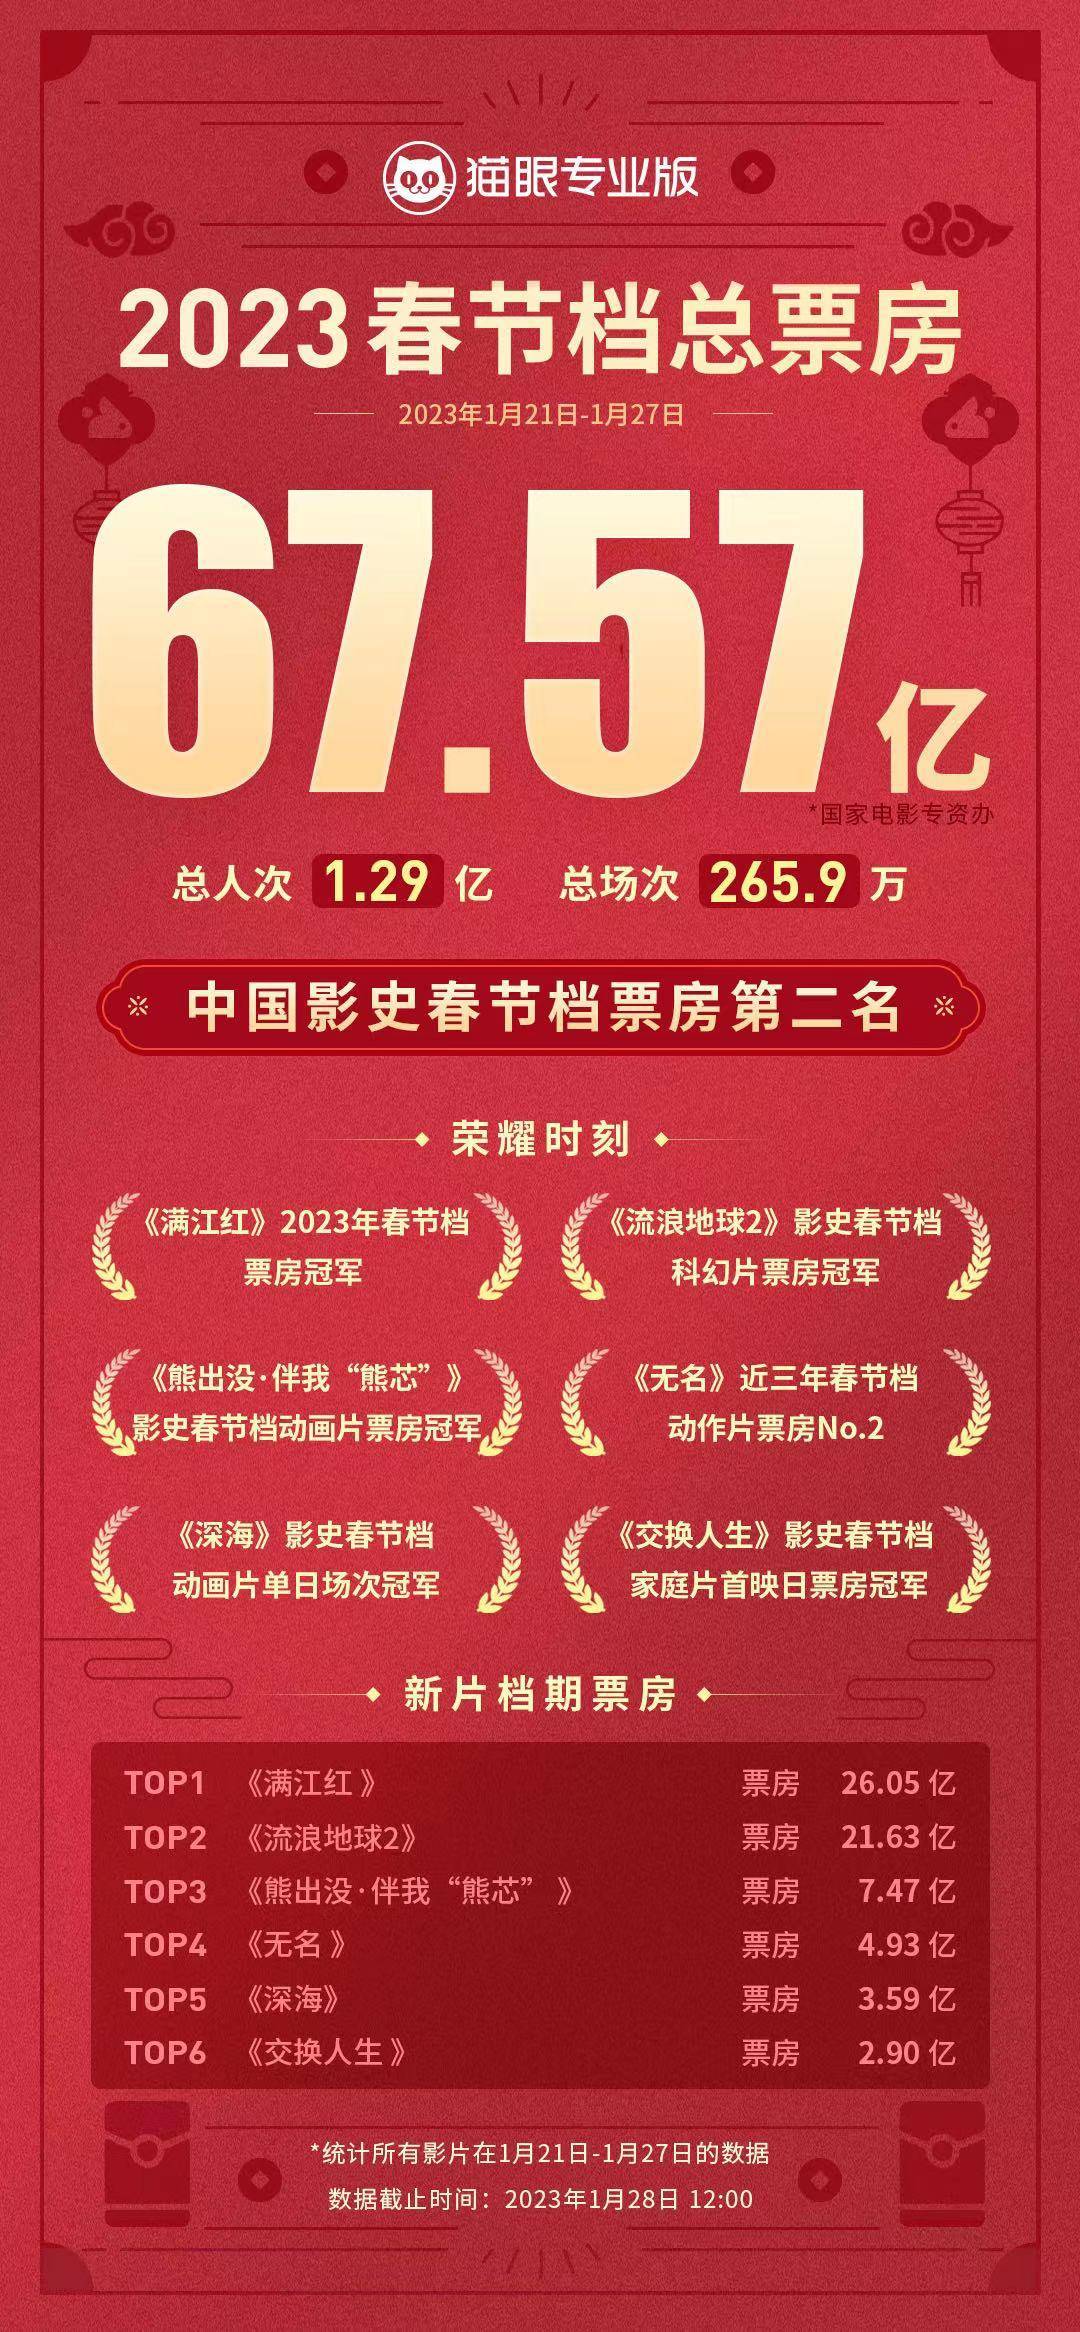 《满江红》传承中华文化居春节档票房榜首 获众官媒点赞